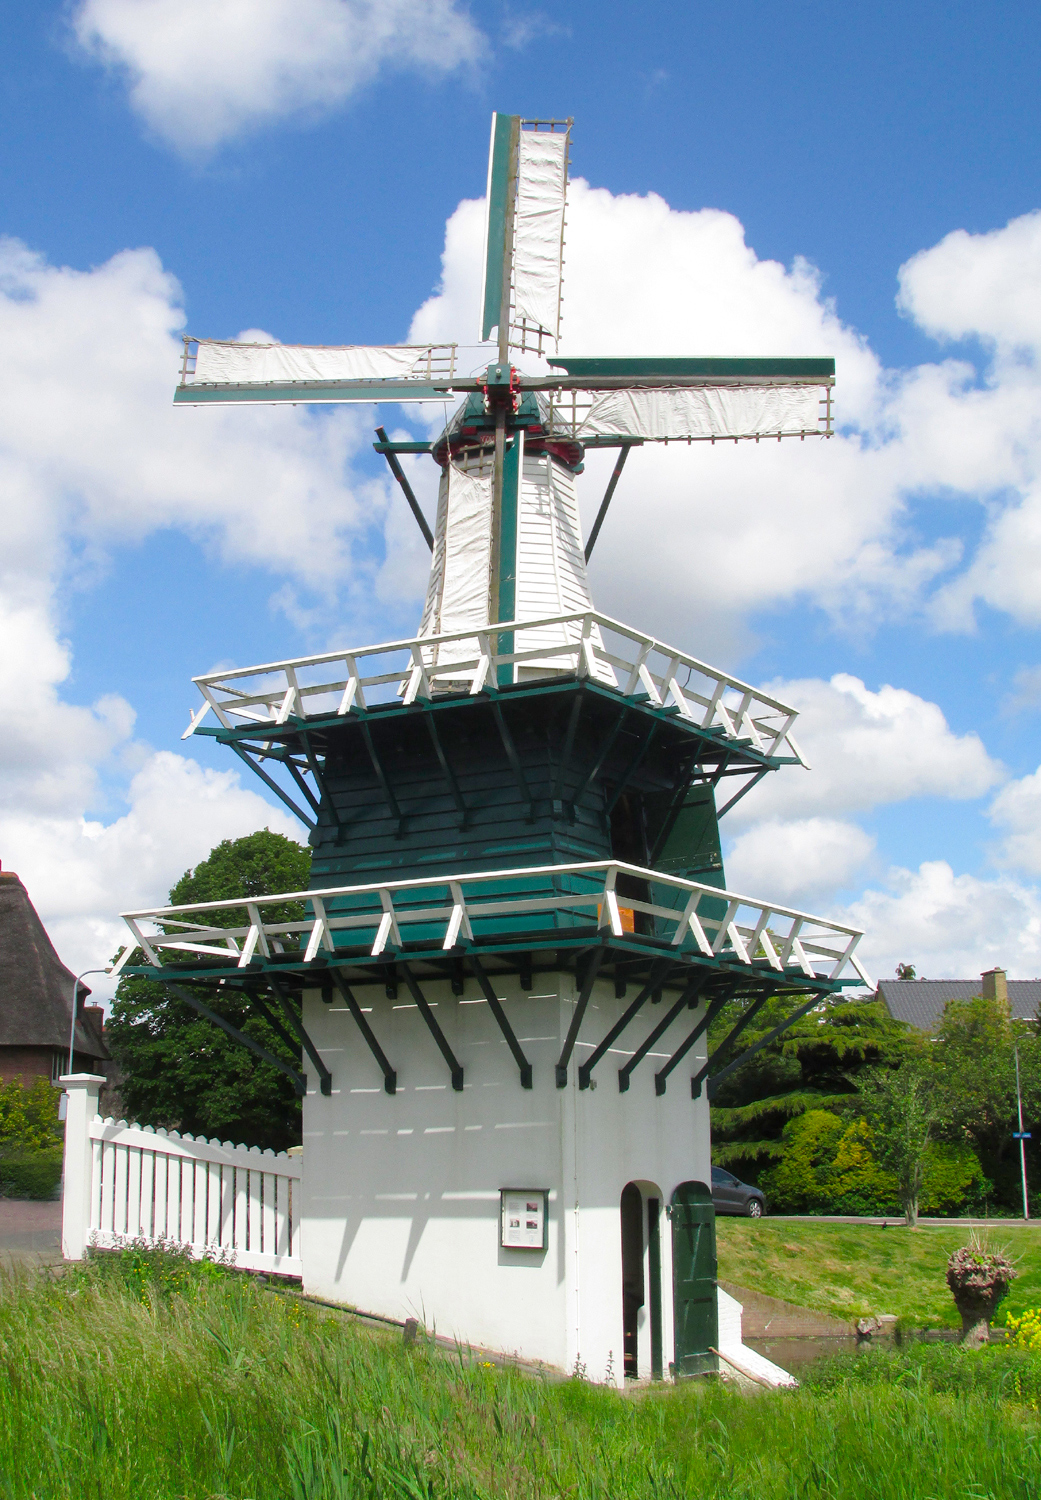 Foto van Groenendaalse Molen, Heemstede, Piet Glasbergen (30-5-2015) | Database Nederlandse molens